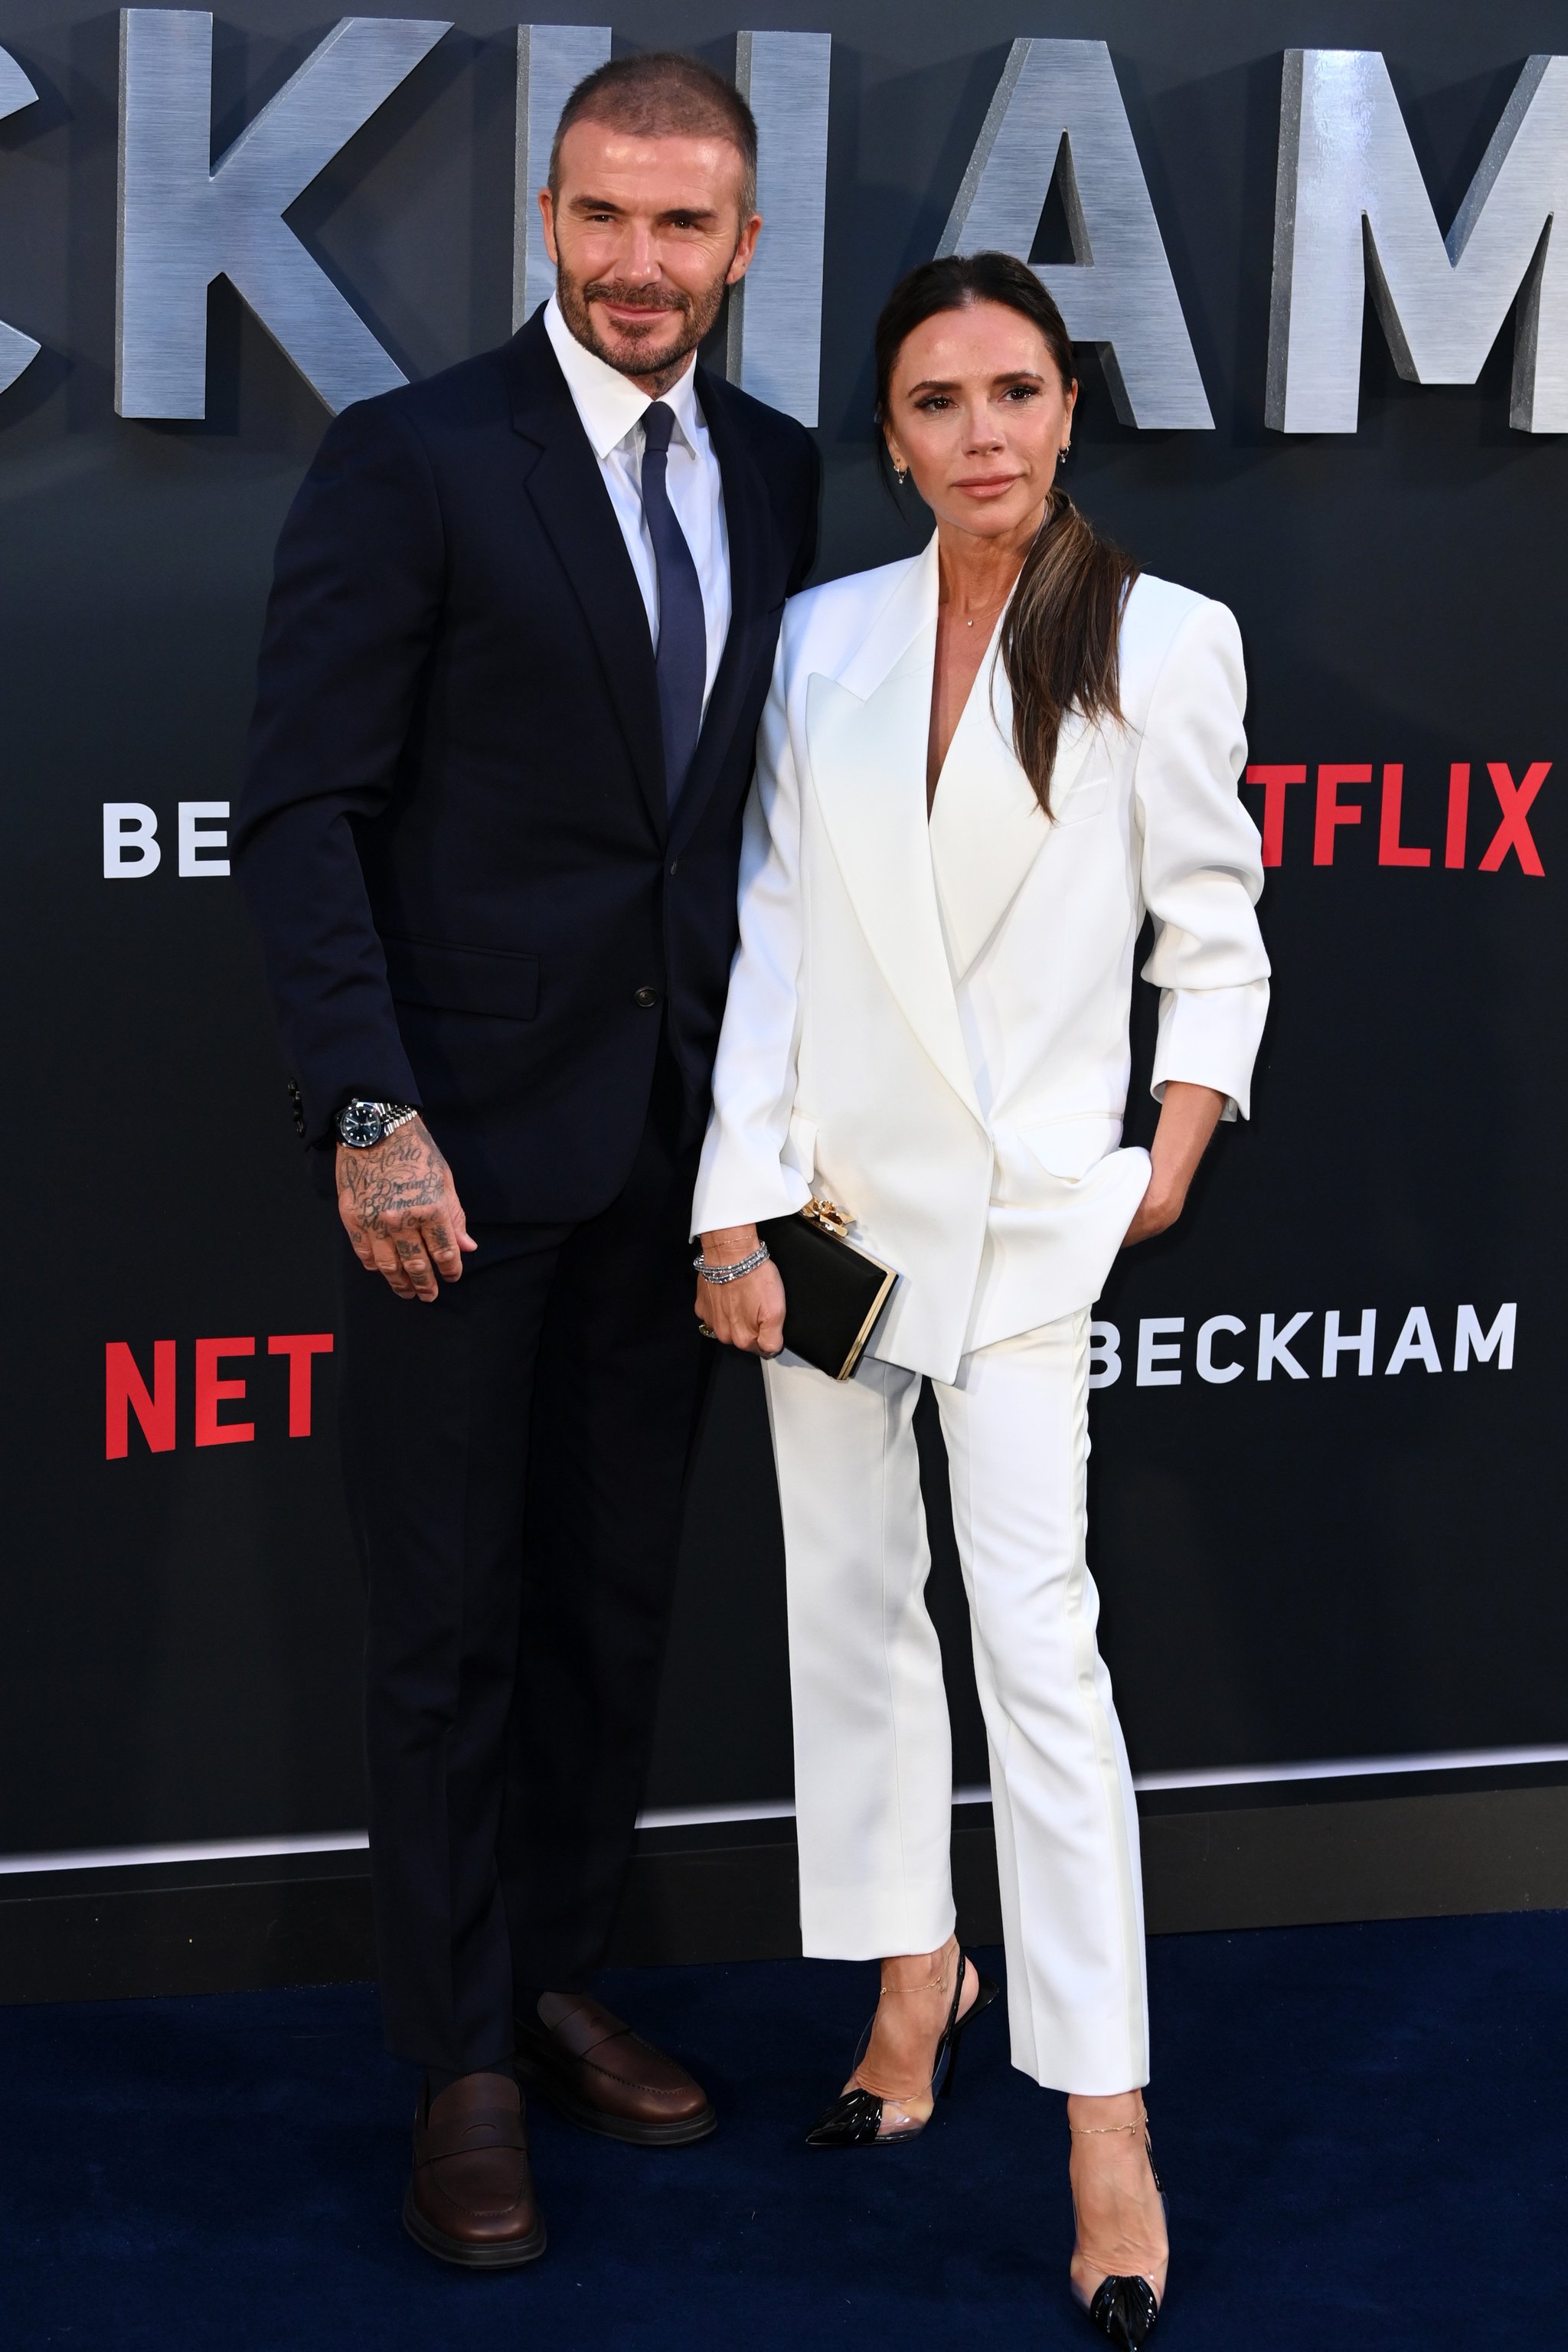 Victoria Beckham con sastre blanco en la presentación de la serie documental Beckham con su marido.